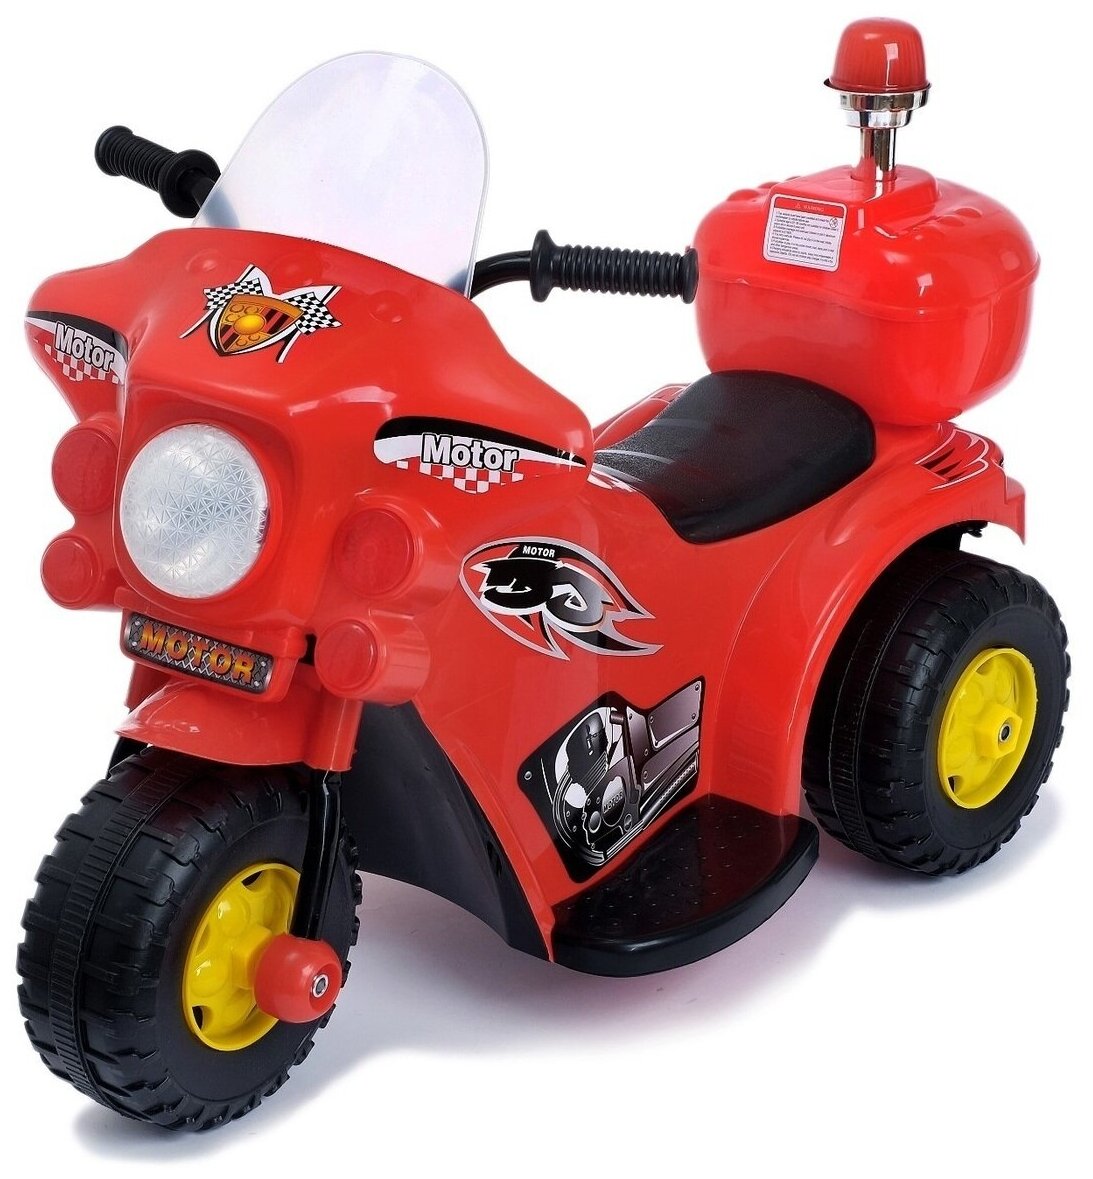 Электромобиль"Мотоцикл шерифа", цвет красный / детский траспорт / каталка для малышей / подарок на день рождения ребенку / для игр на улице / (1 шт.)